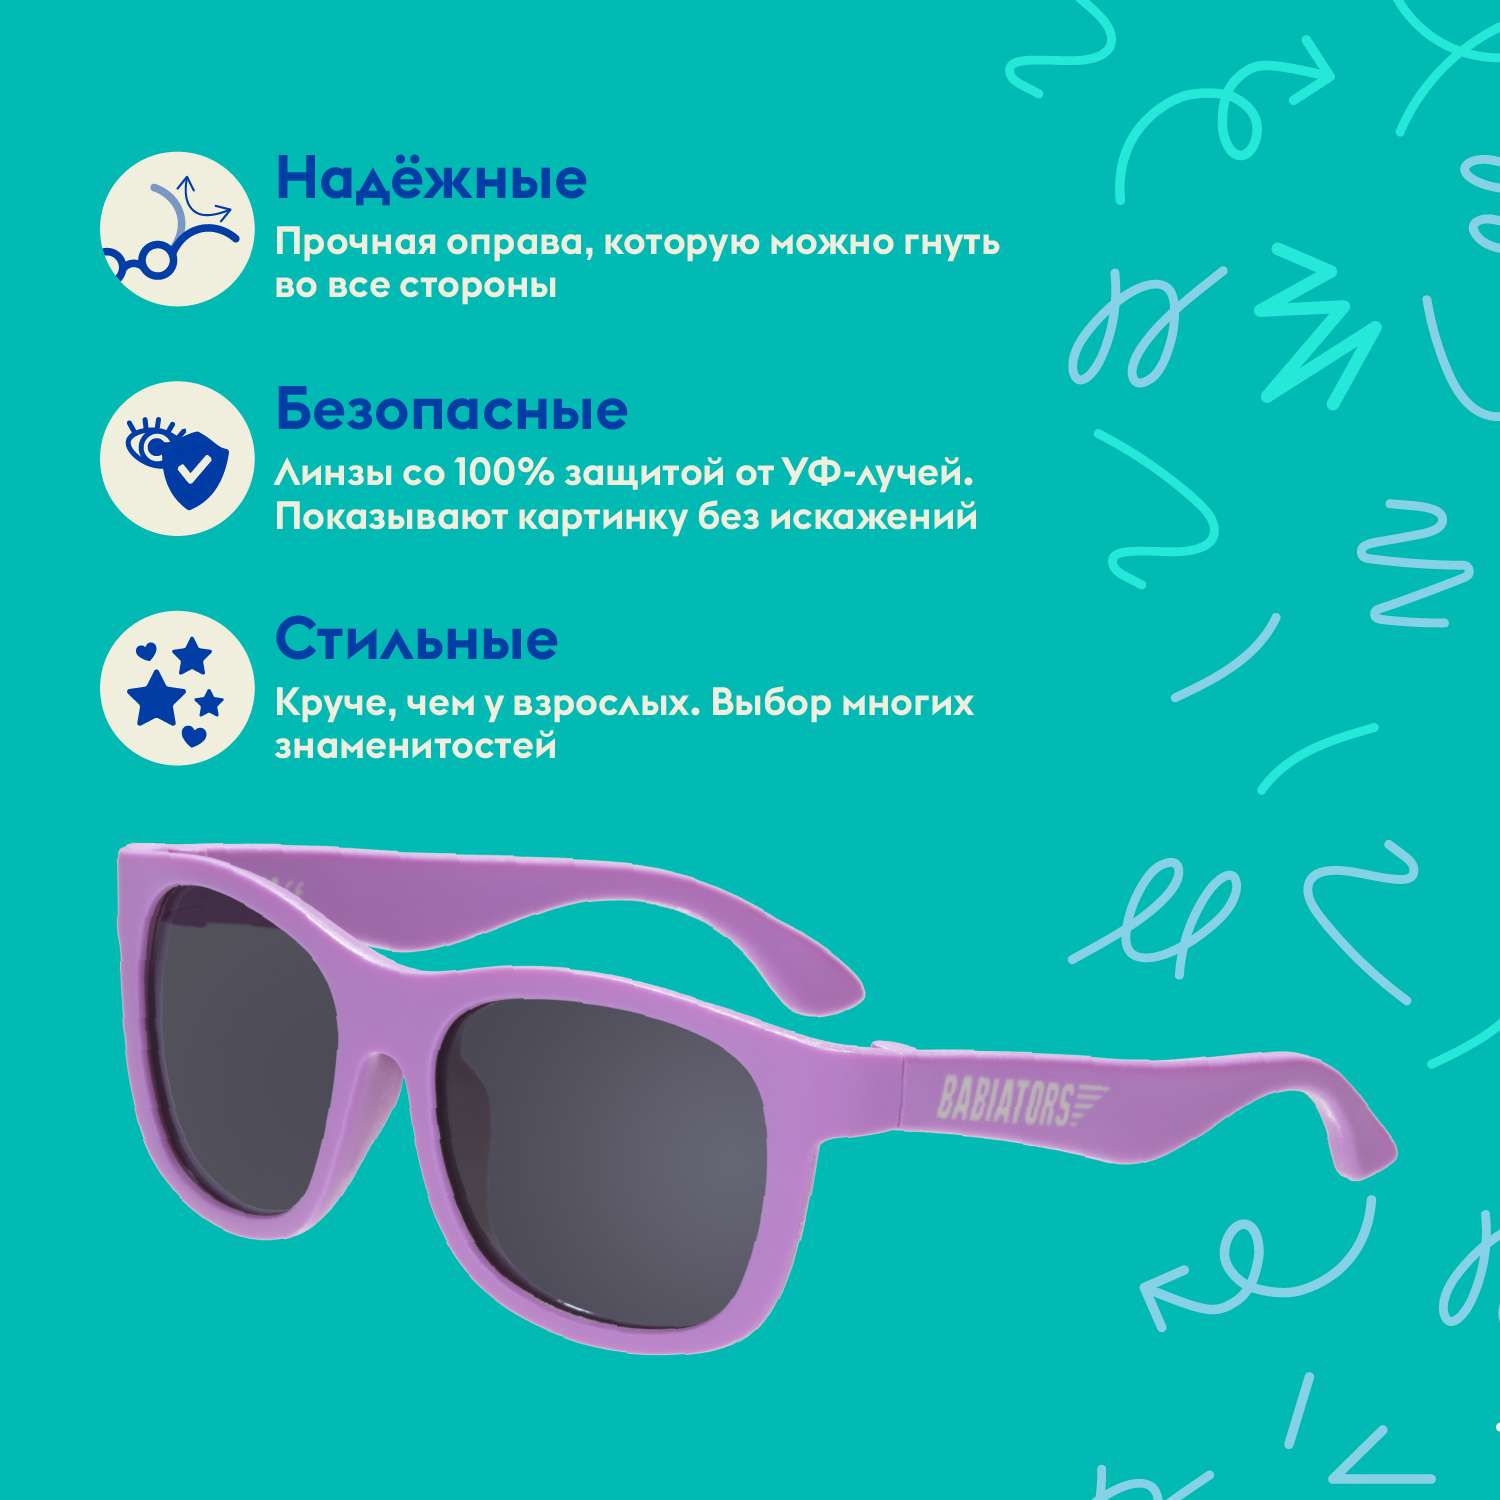 Детские солнцезащитные очки Babiators Navigator Крошка сирень 6+ лет NAV-043 - фото 3